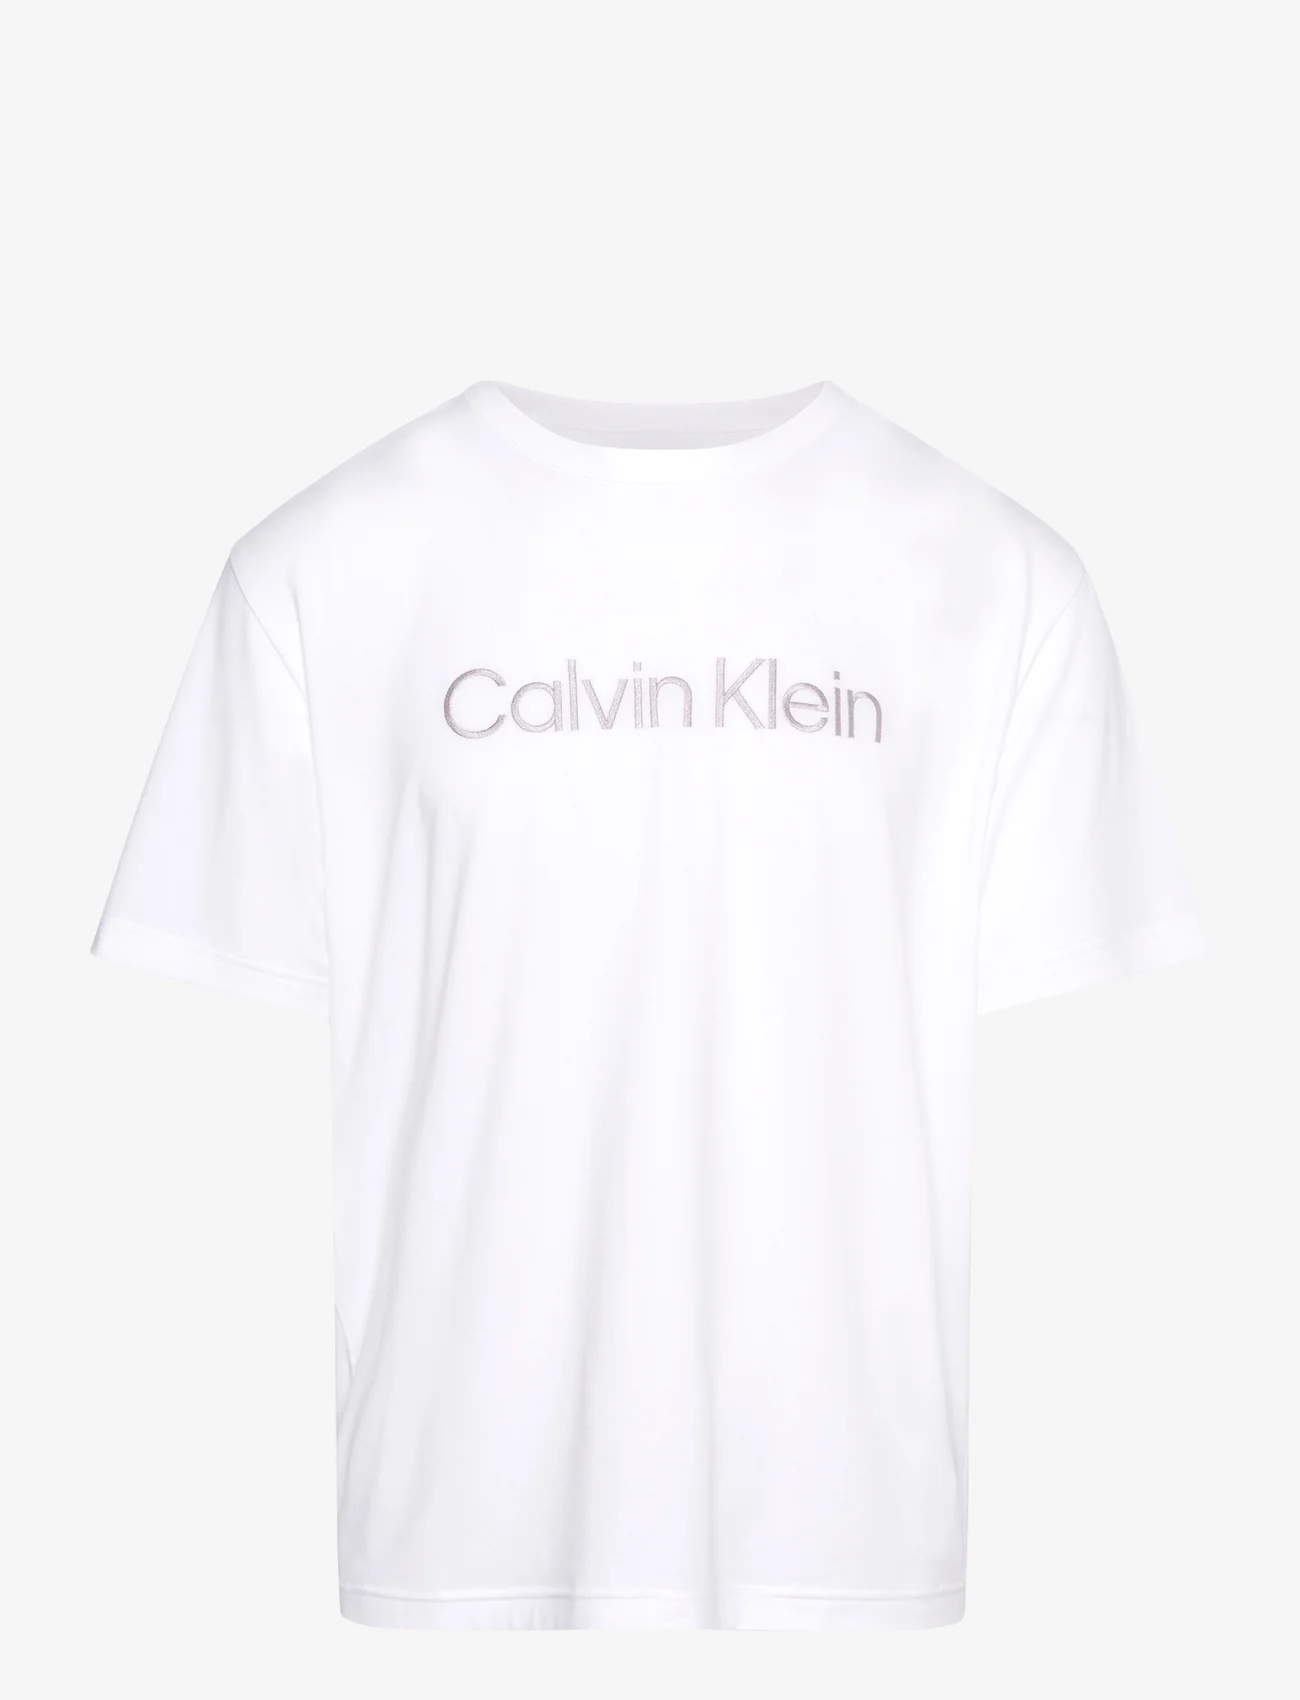 Calvin Klein - S/S CREW NECK - kurzärmelig - white (white logo) - 1